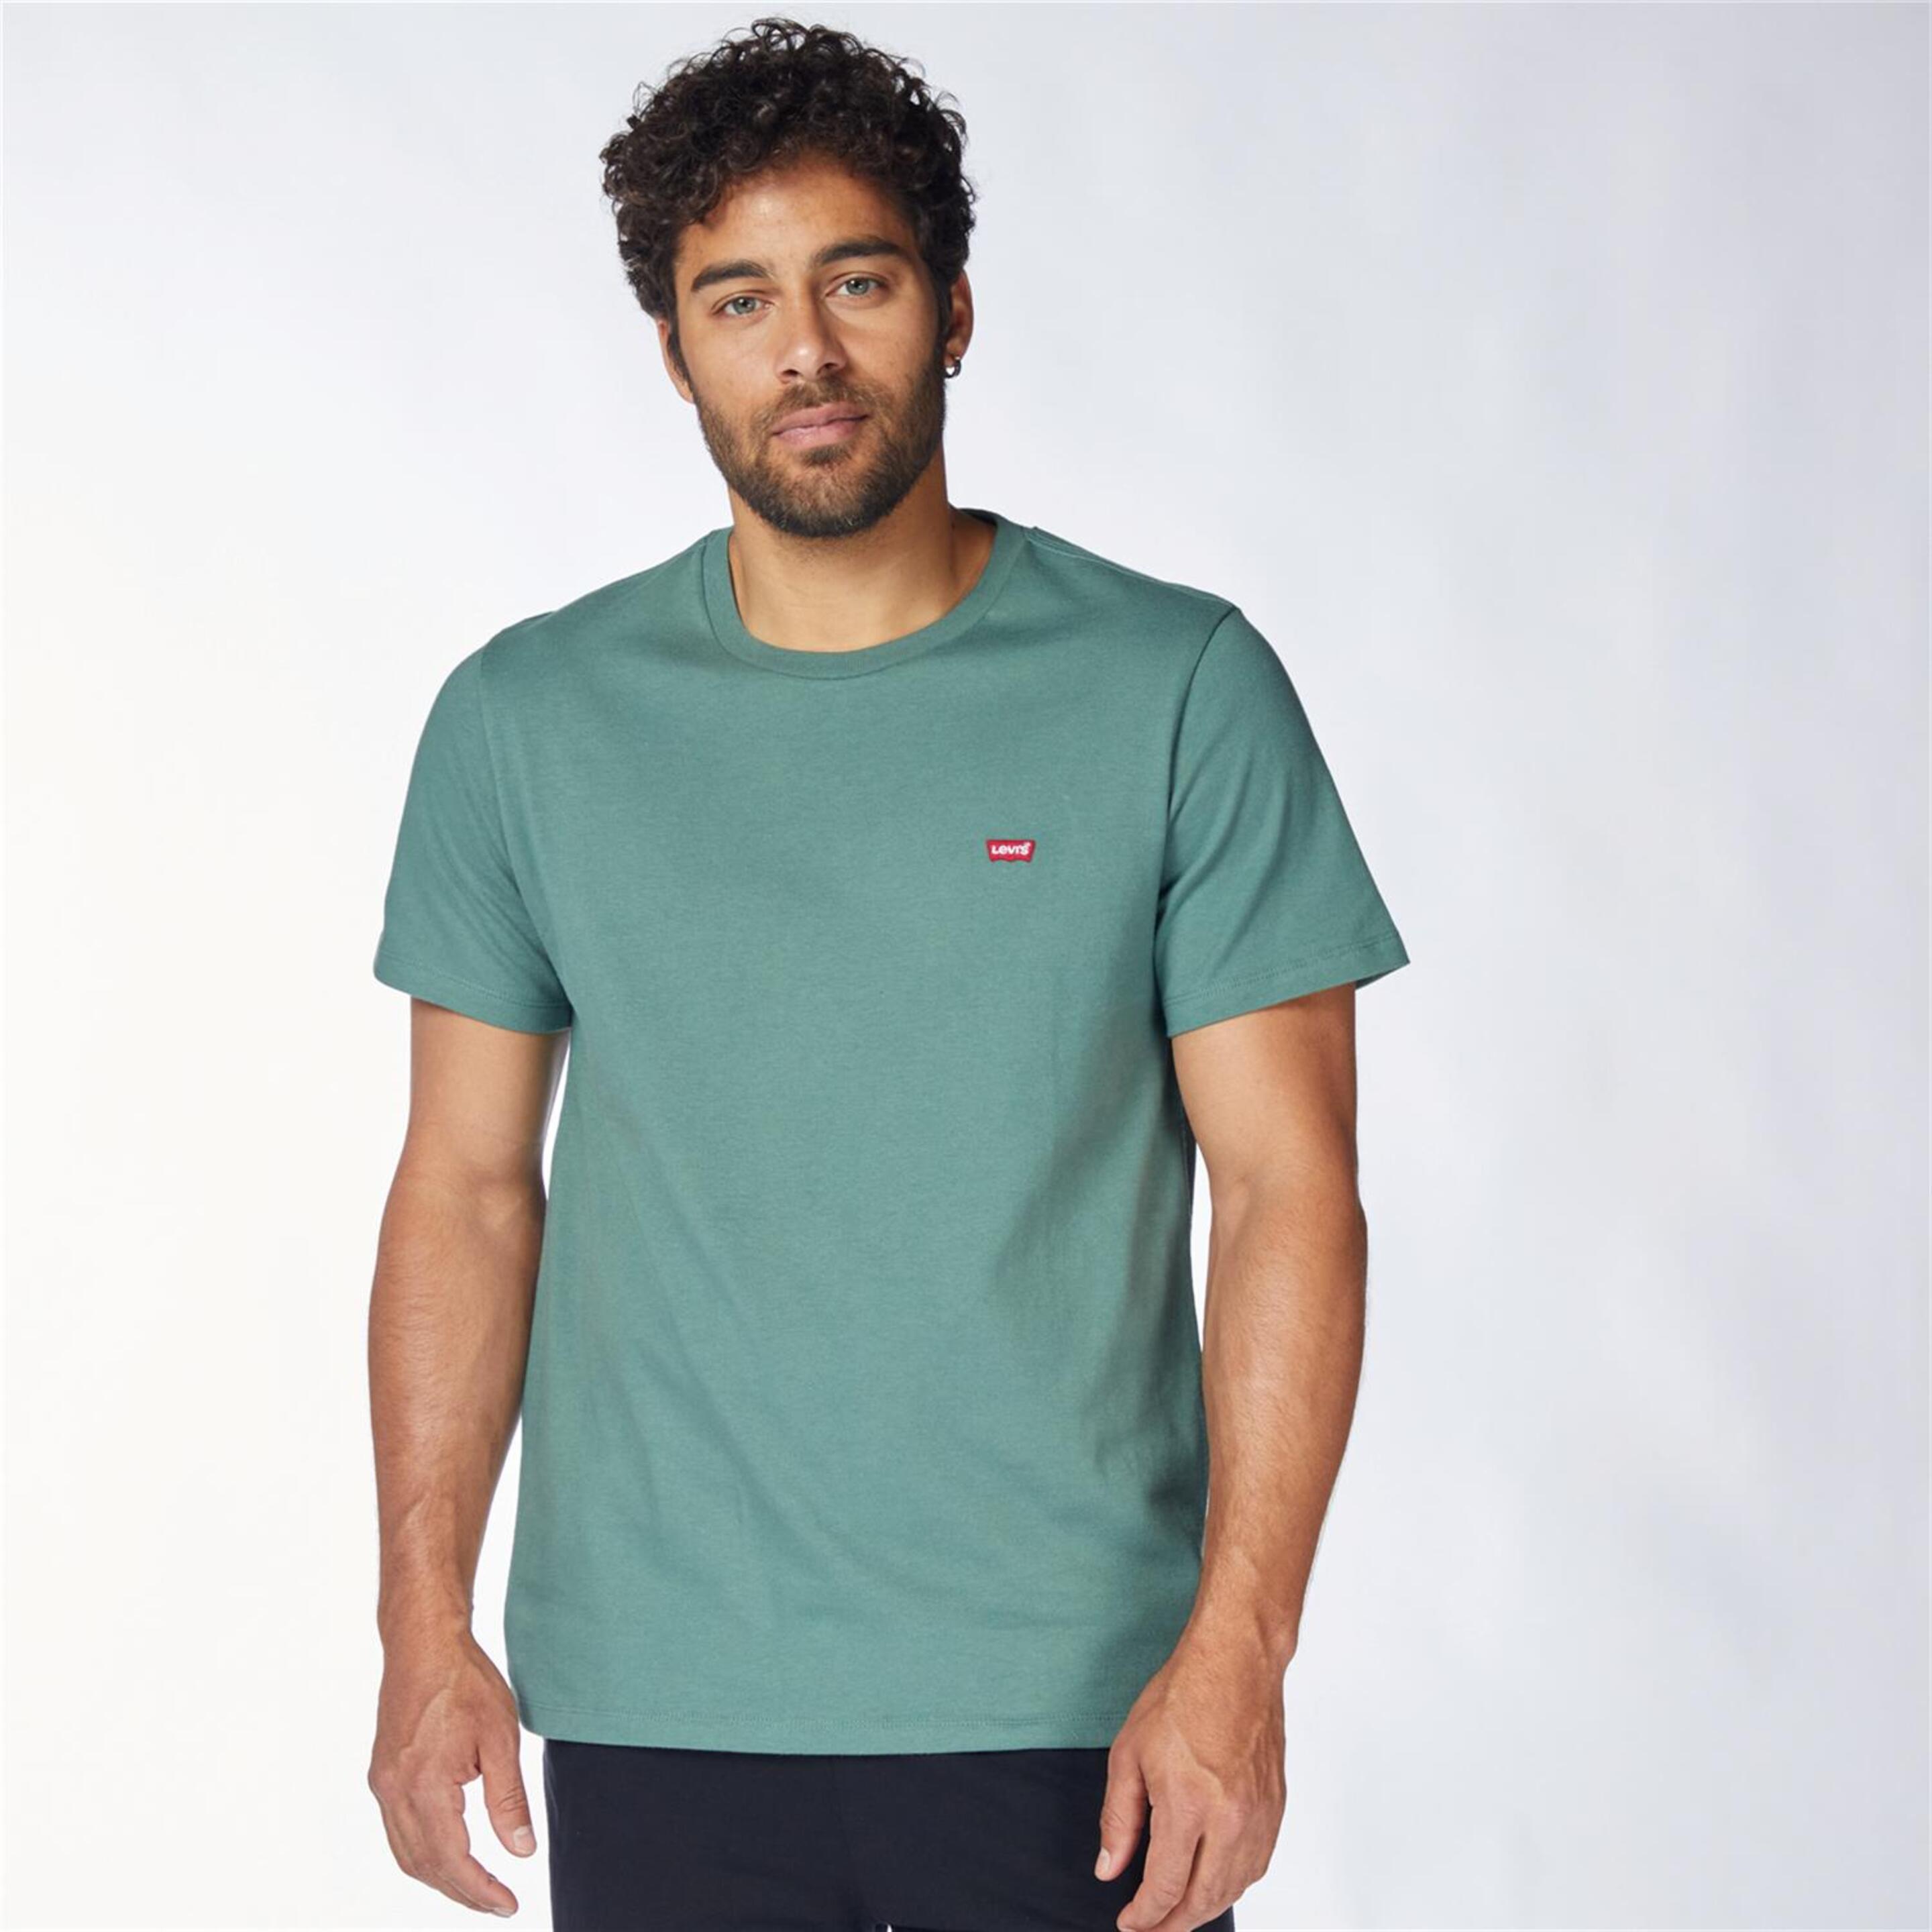 Levi's Ss Original - verde - Camiseta Hombre